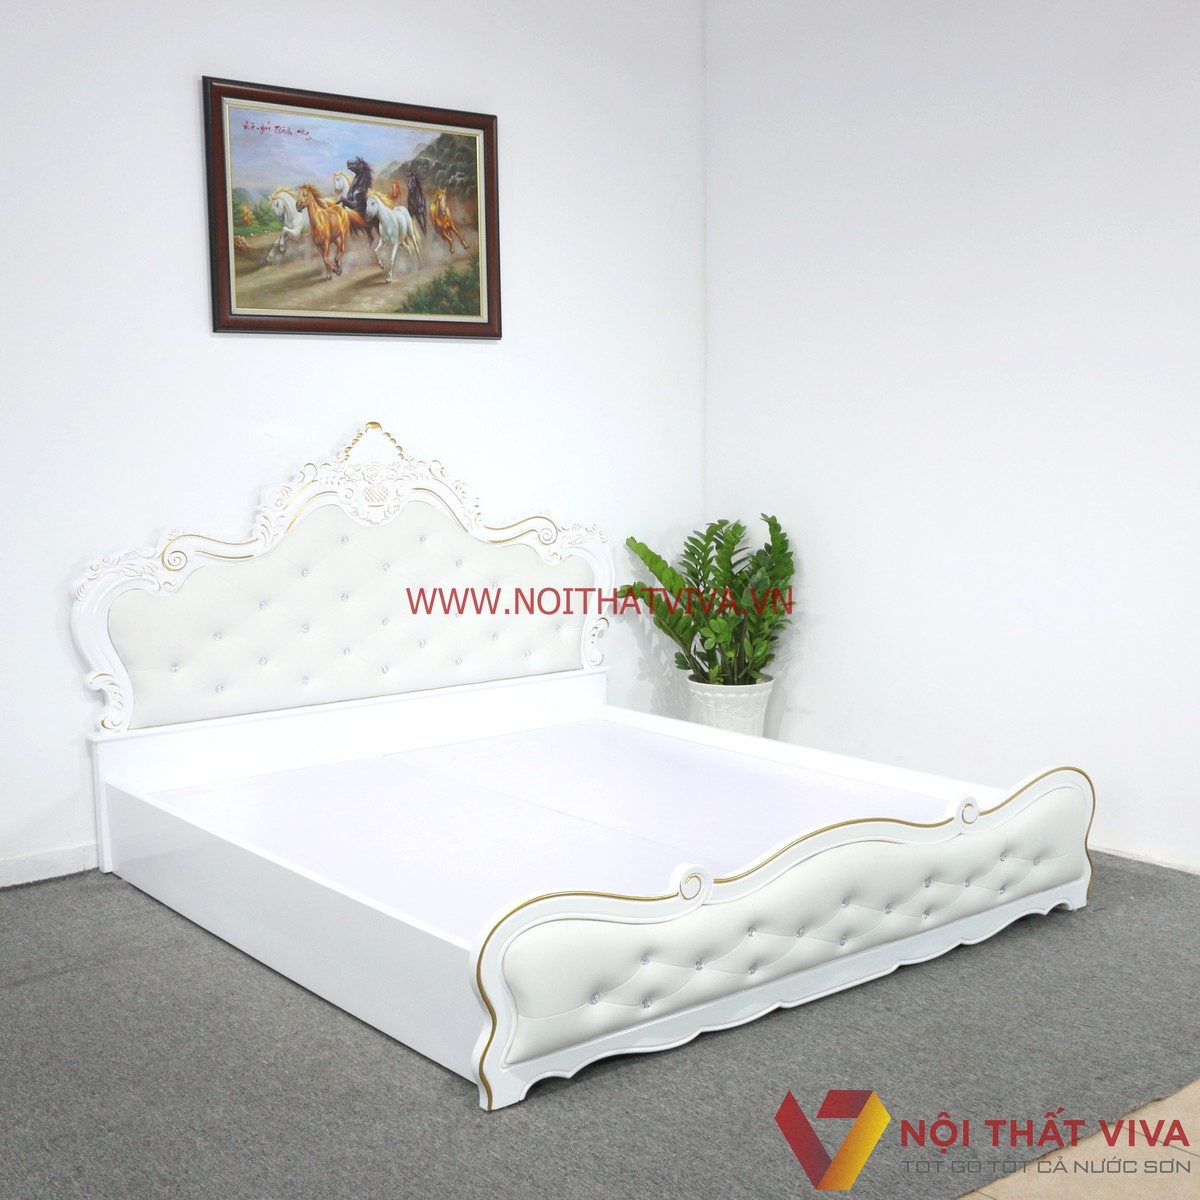 [HOT] 1001 mẫu giường ngủ MDF giá rẻ, thiết kế trẻ trung nhất định phải xem ngay